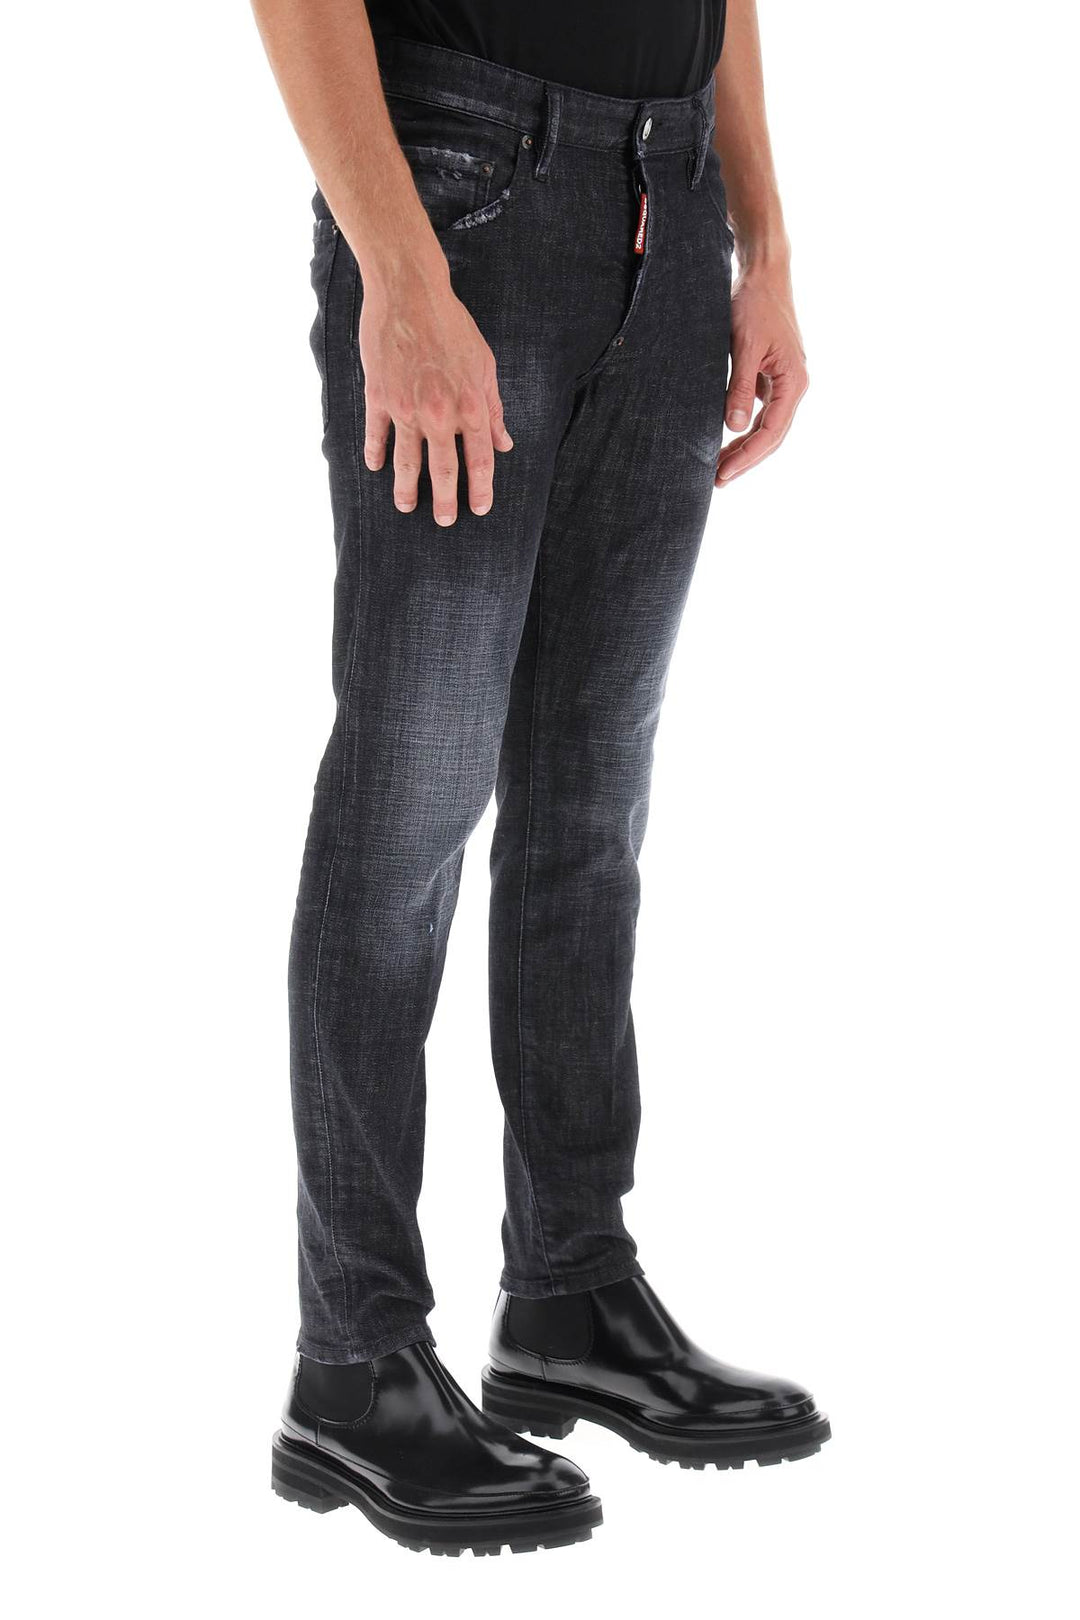 Jeans Skater In Black Clean Wash - Dsquared2 - Uomo